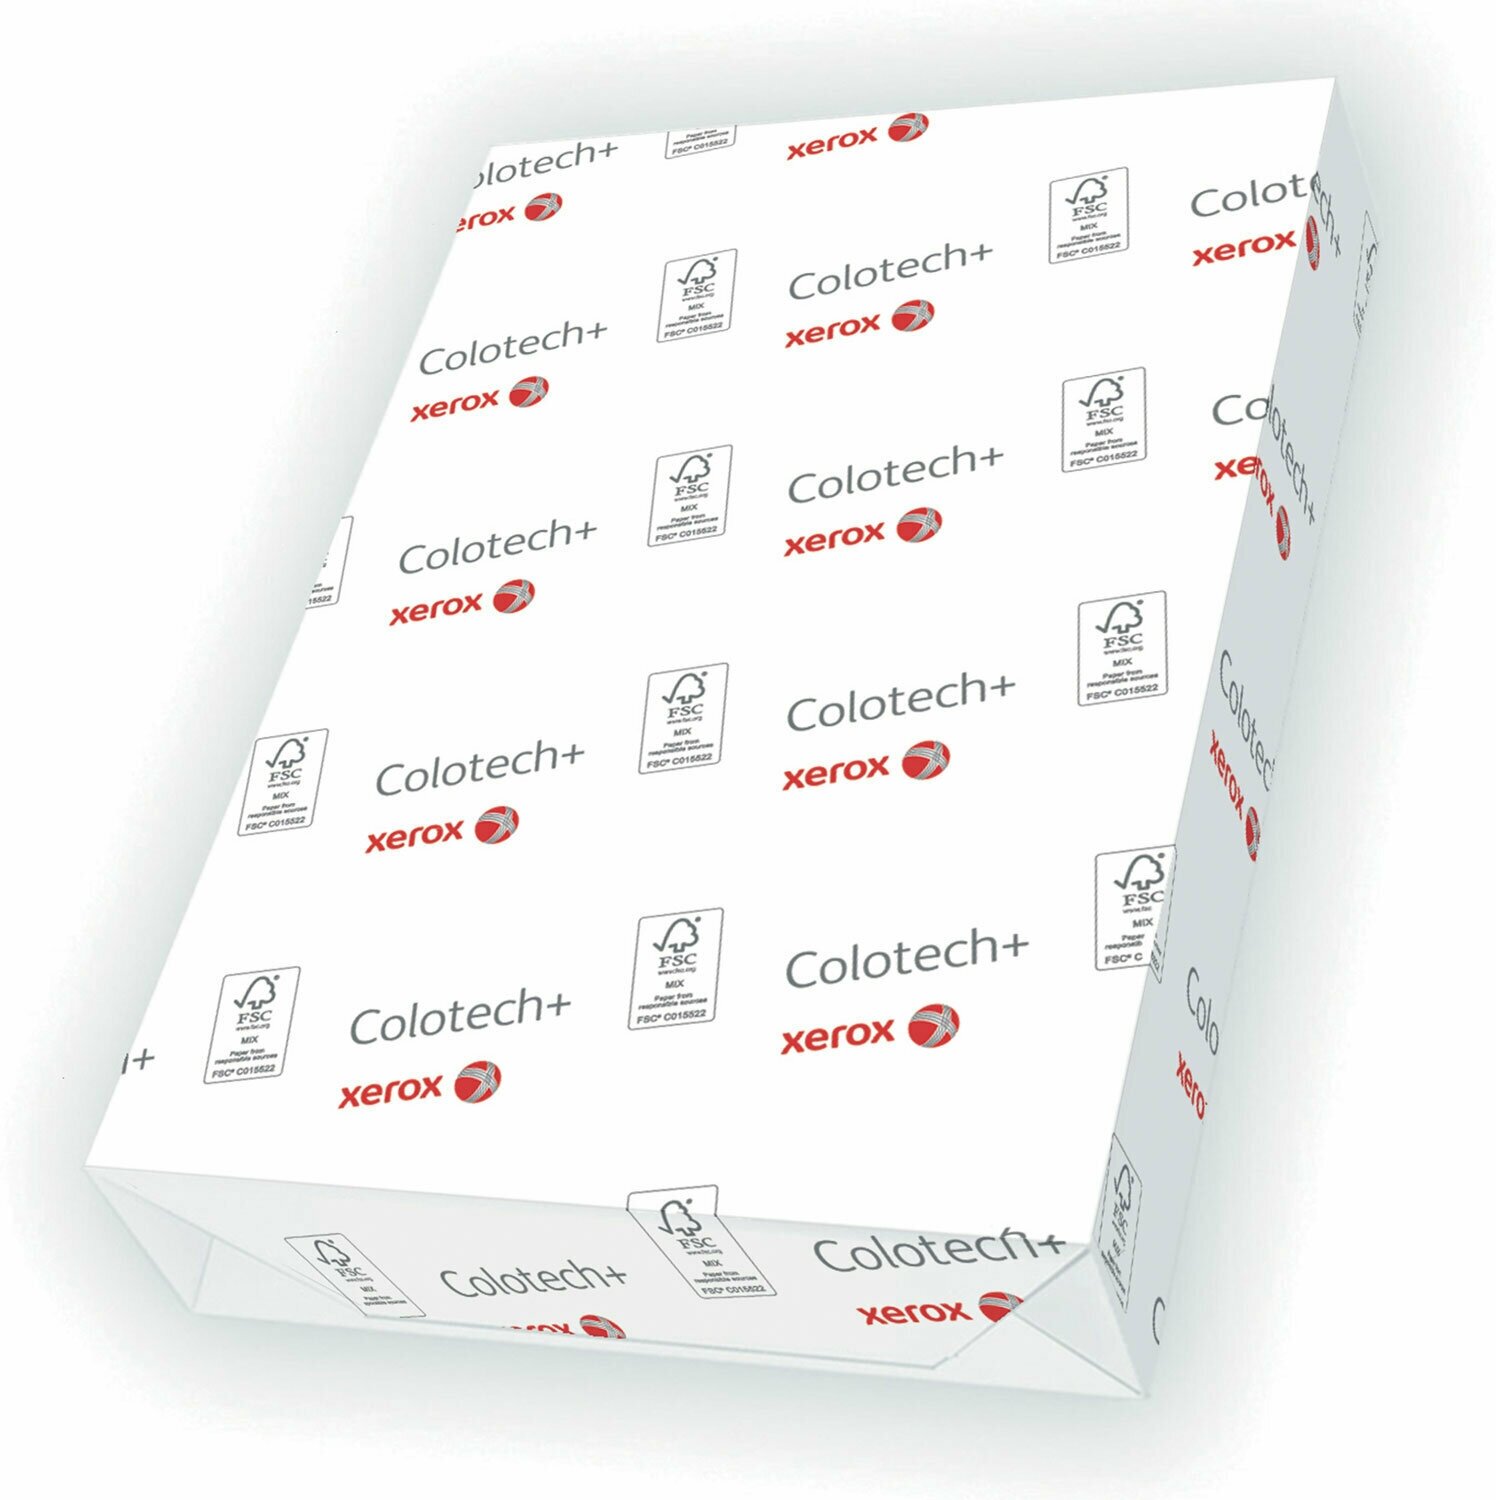 Бумага XEROX COLOTECH+, SRA3, 300 г/м2, 125 л, для полноцветной лазерной печати, А+, Австрия, 170% (CIE), 20723 /Квант продажи 1 ед./